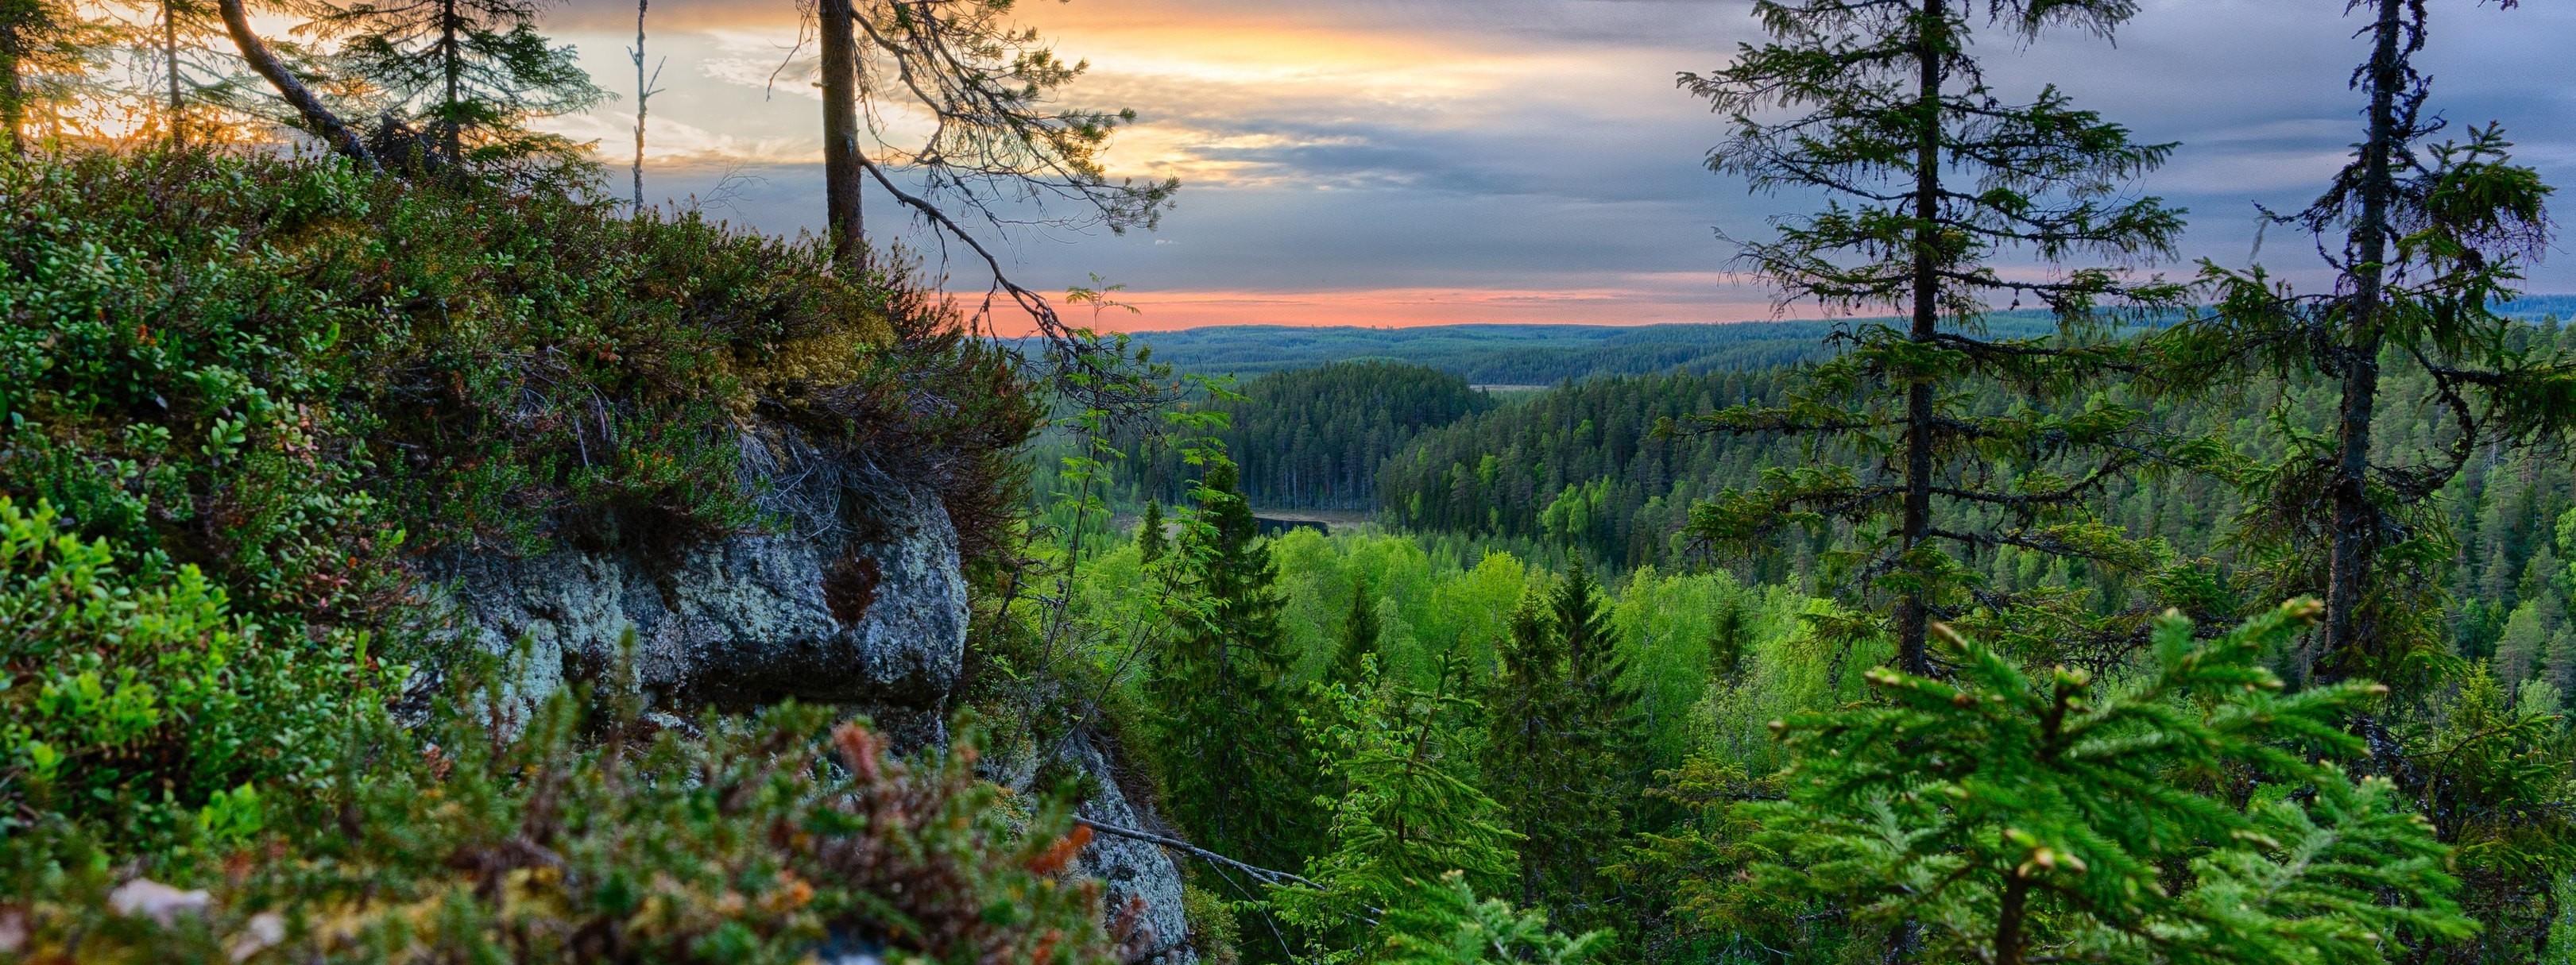 Miten menee, suomalainen metsä? – WWF Suomi